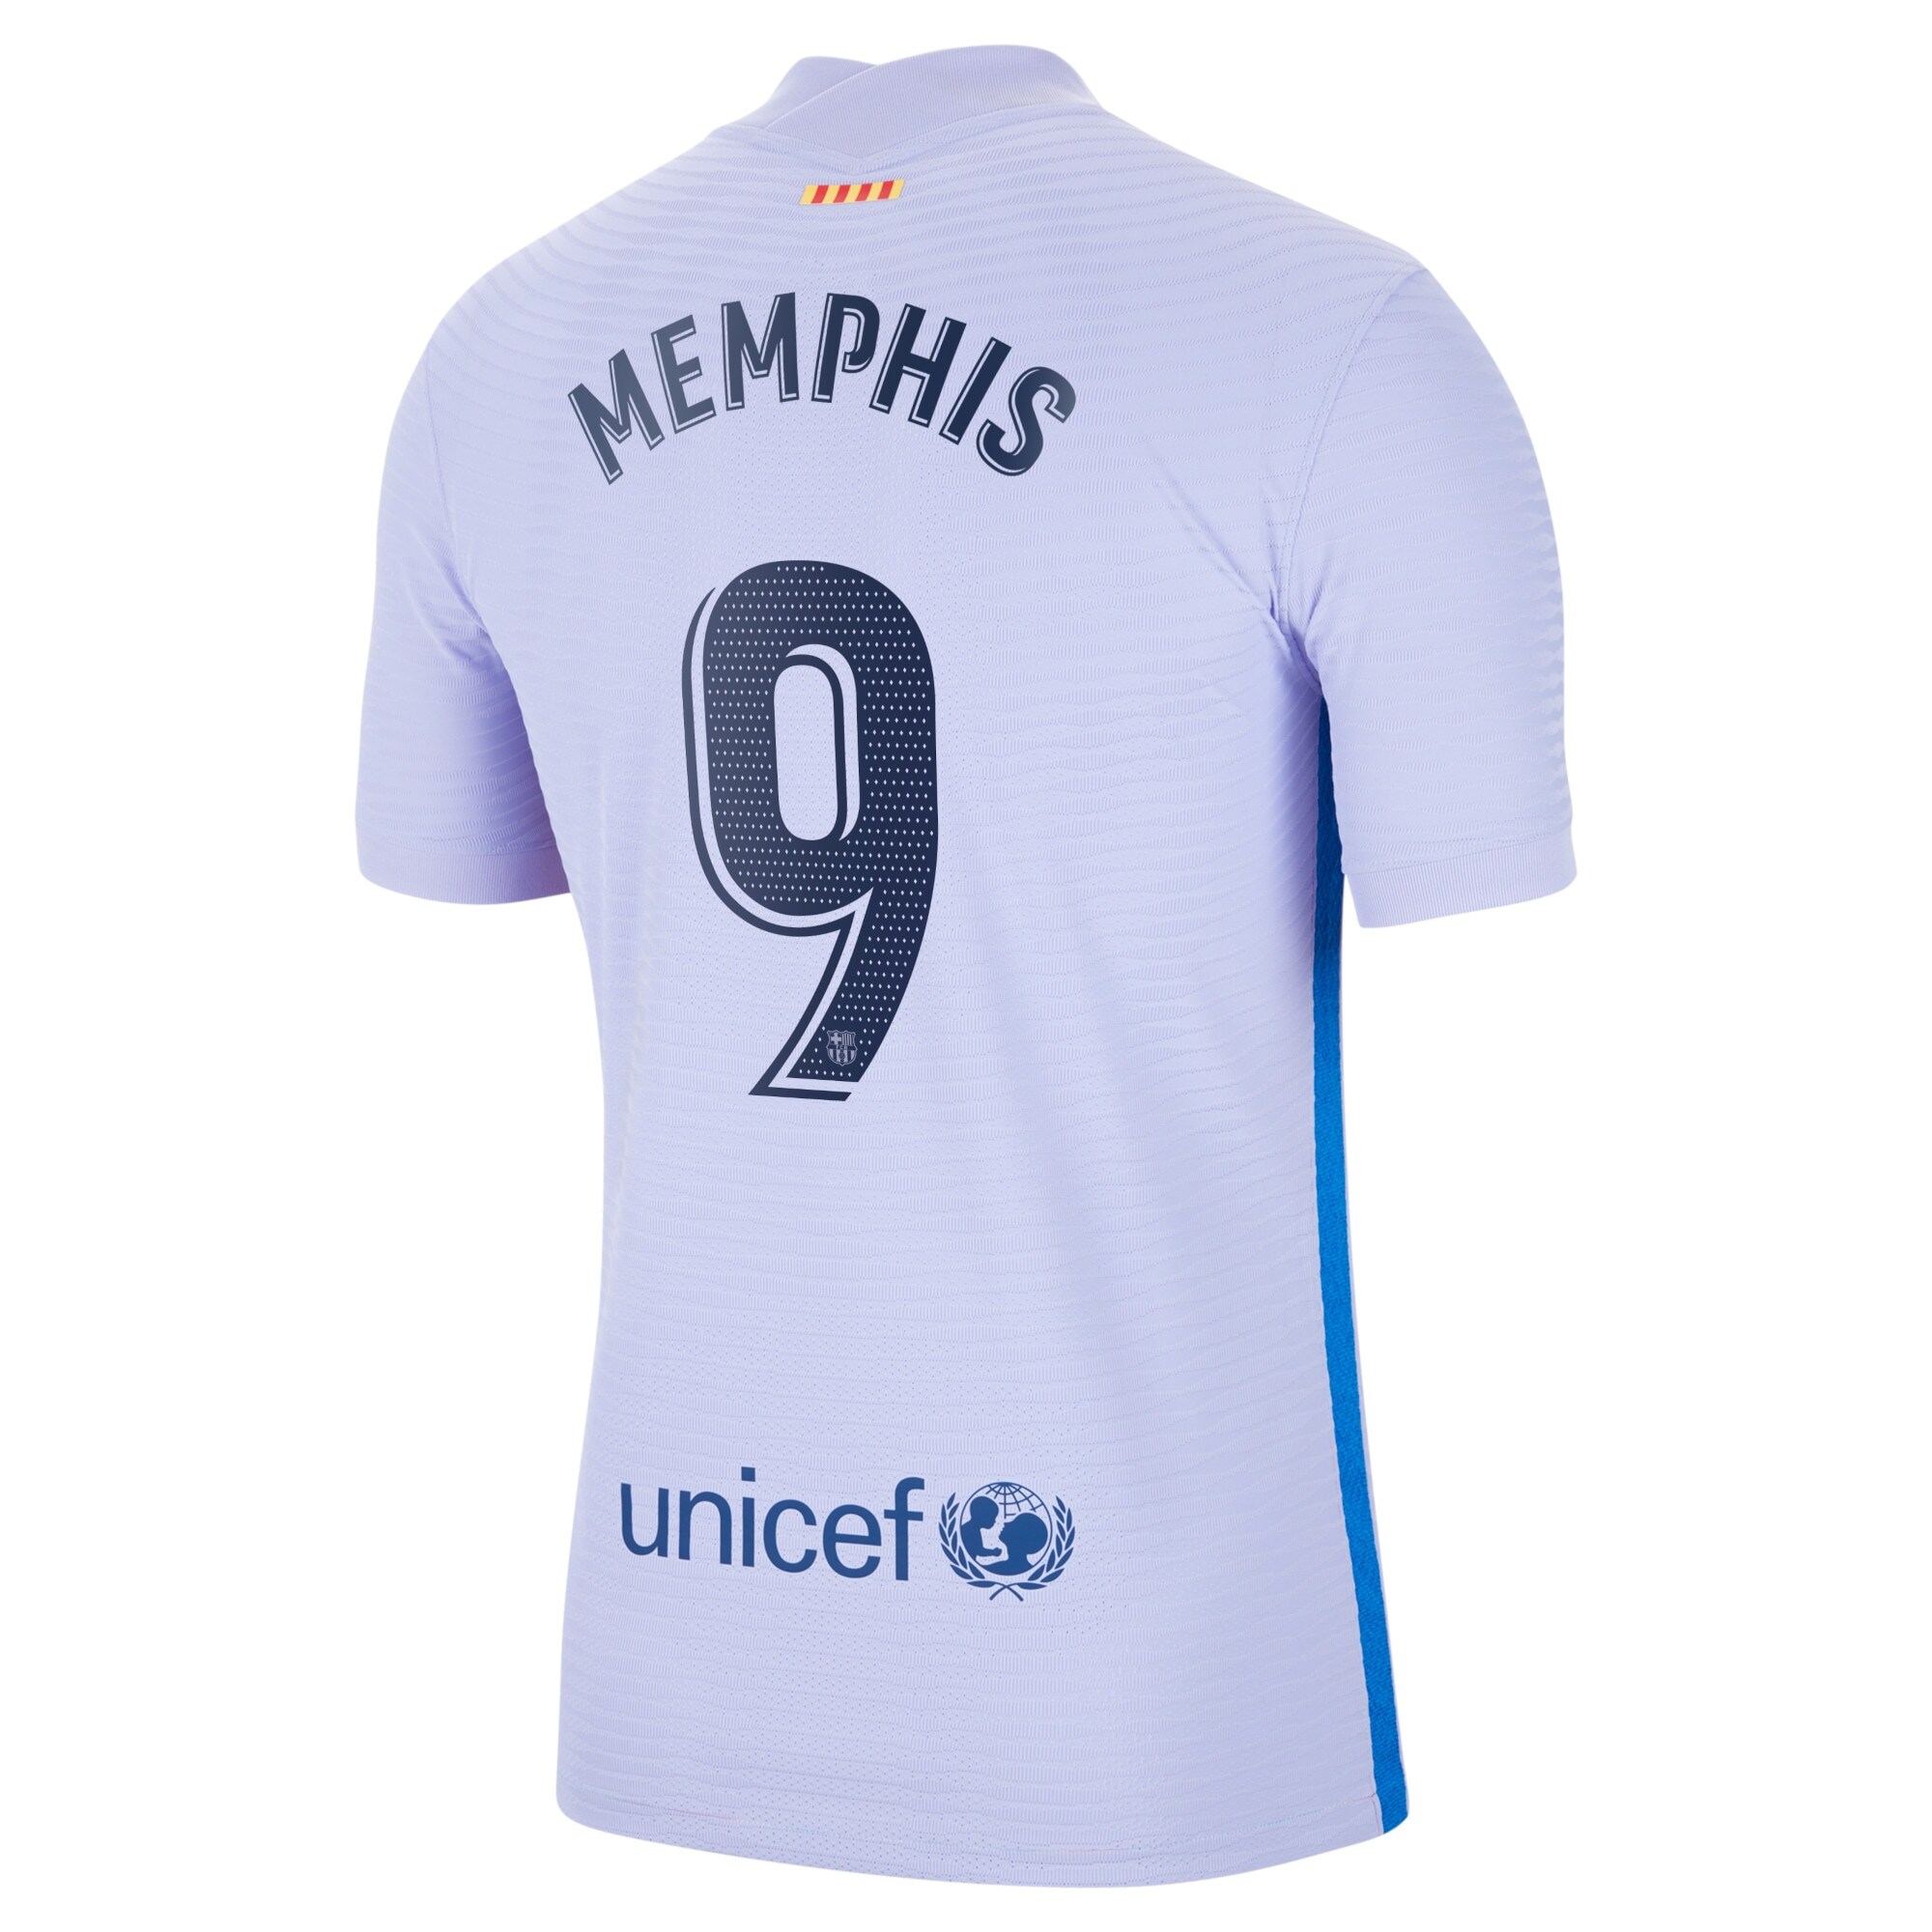 Barcelona Away Vapor Match Shirt 2021-22 with Memphis 9 printing